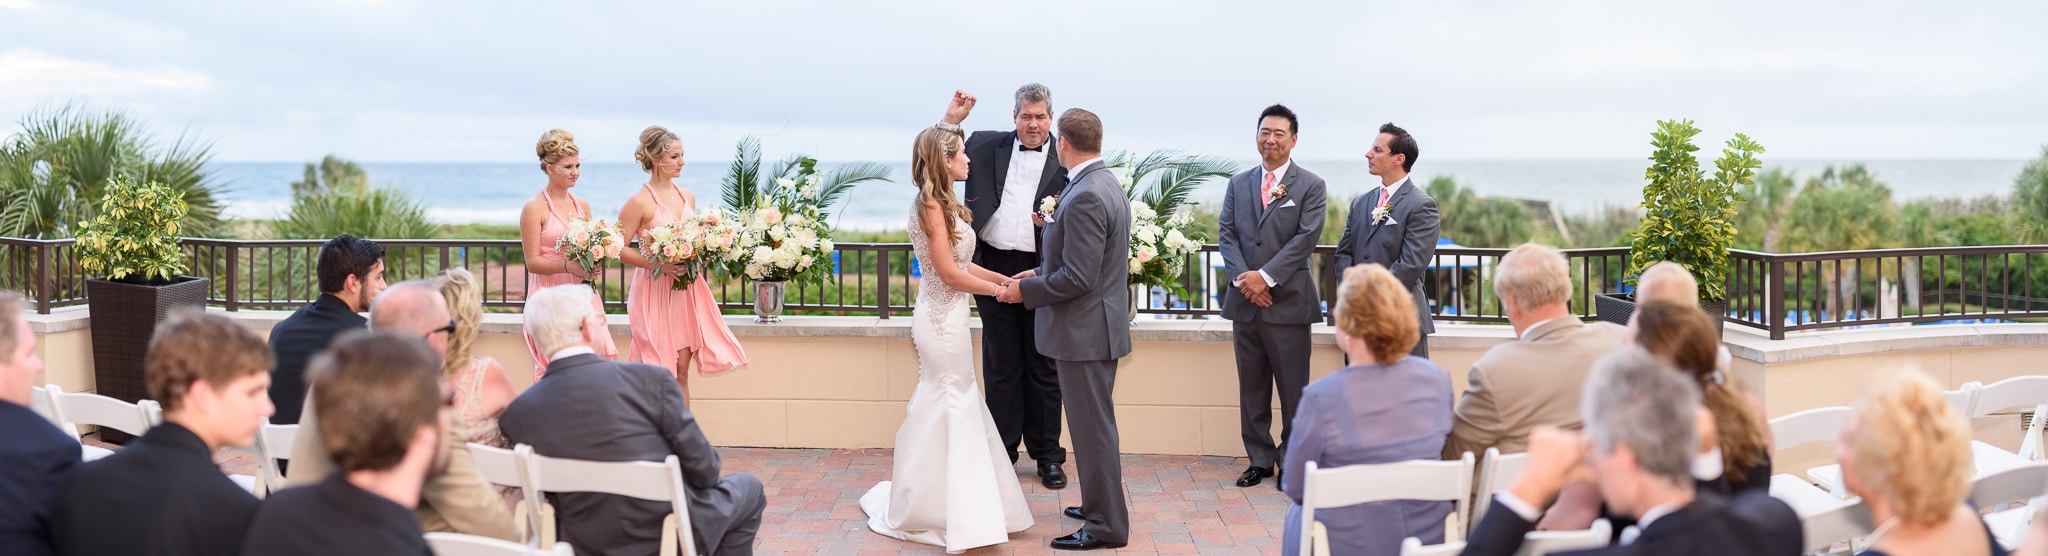 Panorama of wedding ceremony on veranda overlooking the ocean - Grande Dunes Ocean Club - Myrtle Beach